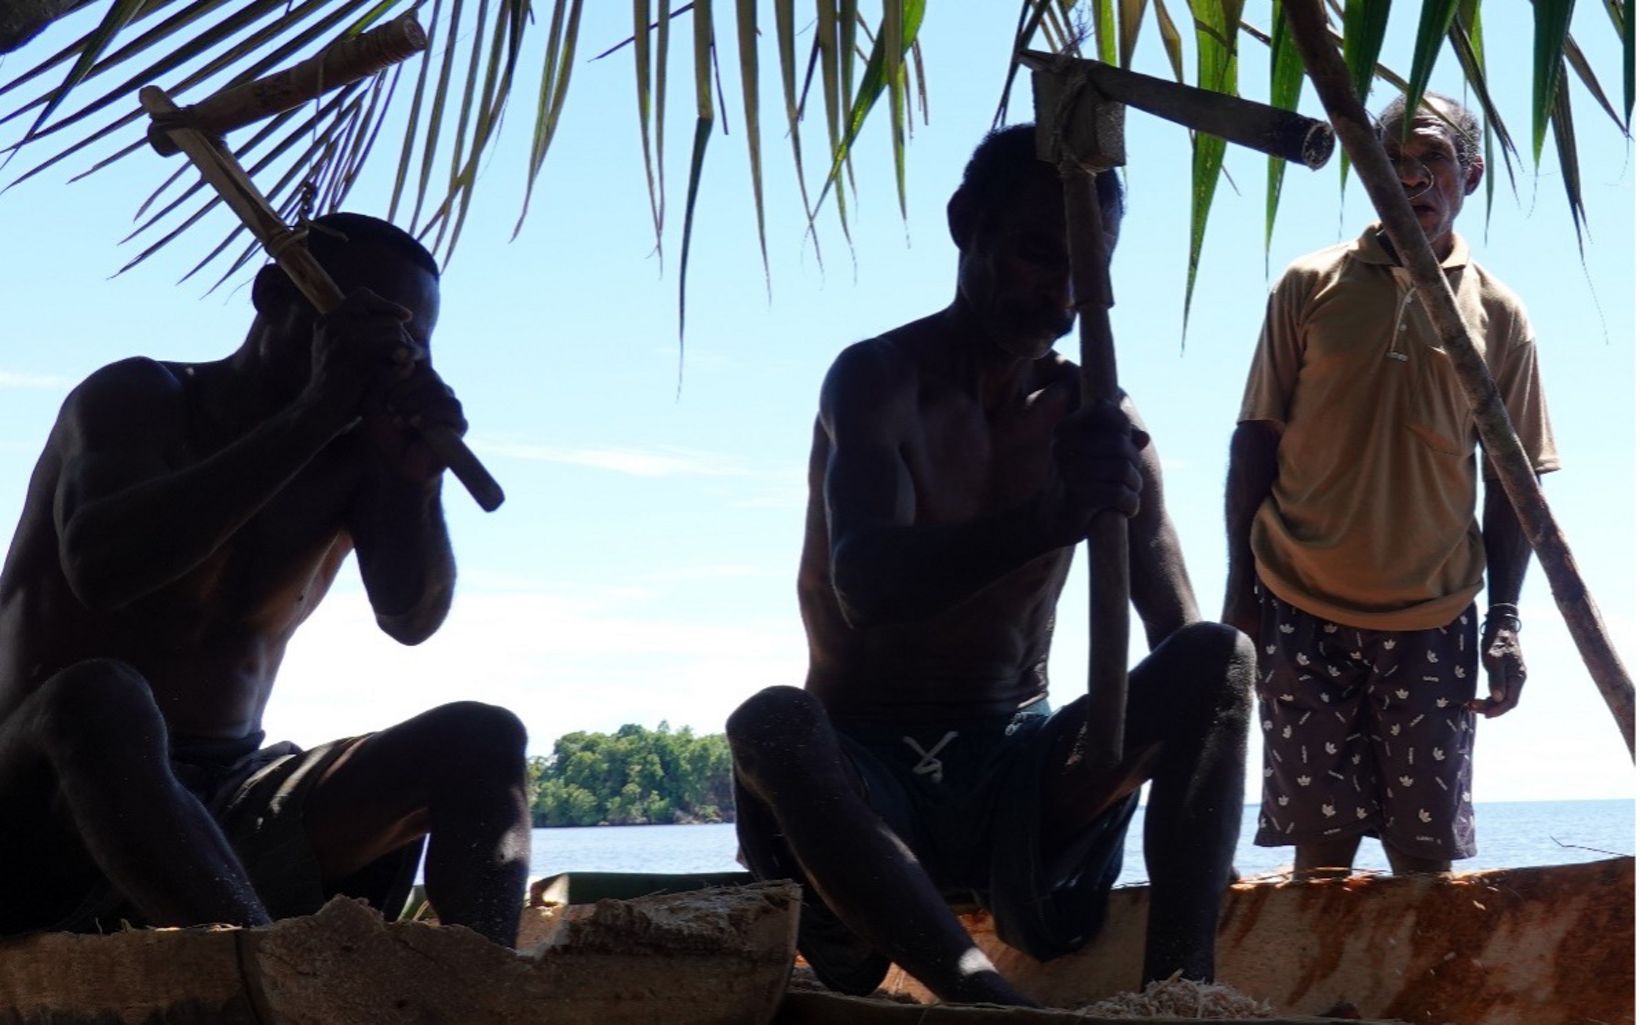 Keterangan Foto Perwakilan dari kelima kampung di Distrik Misool Utara menokok sagu bersama sebagai bagian dari Festival Budaya Misool Utara yang memperkenalkan budaya dan hidup keseharian warga Matbat. © Nugroho Arif Prabowo/YKAN